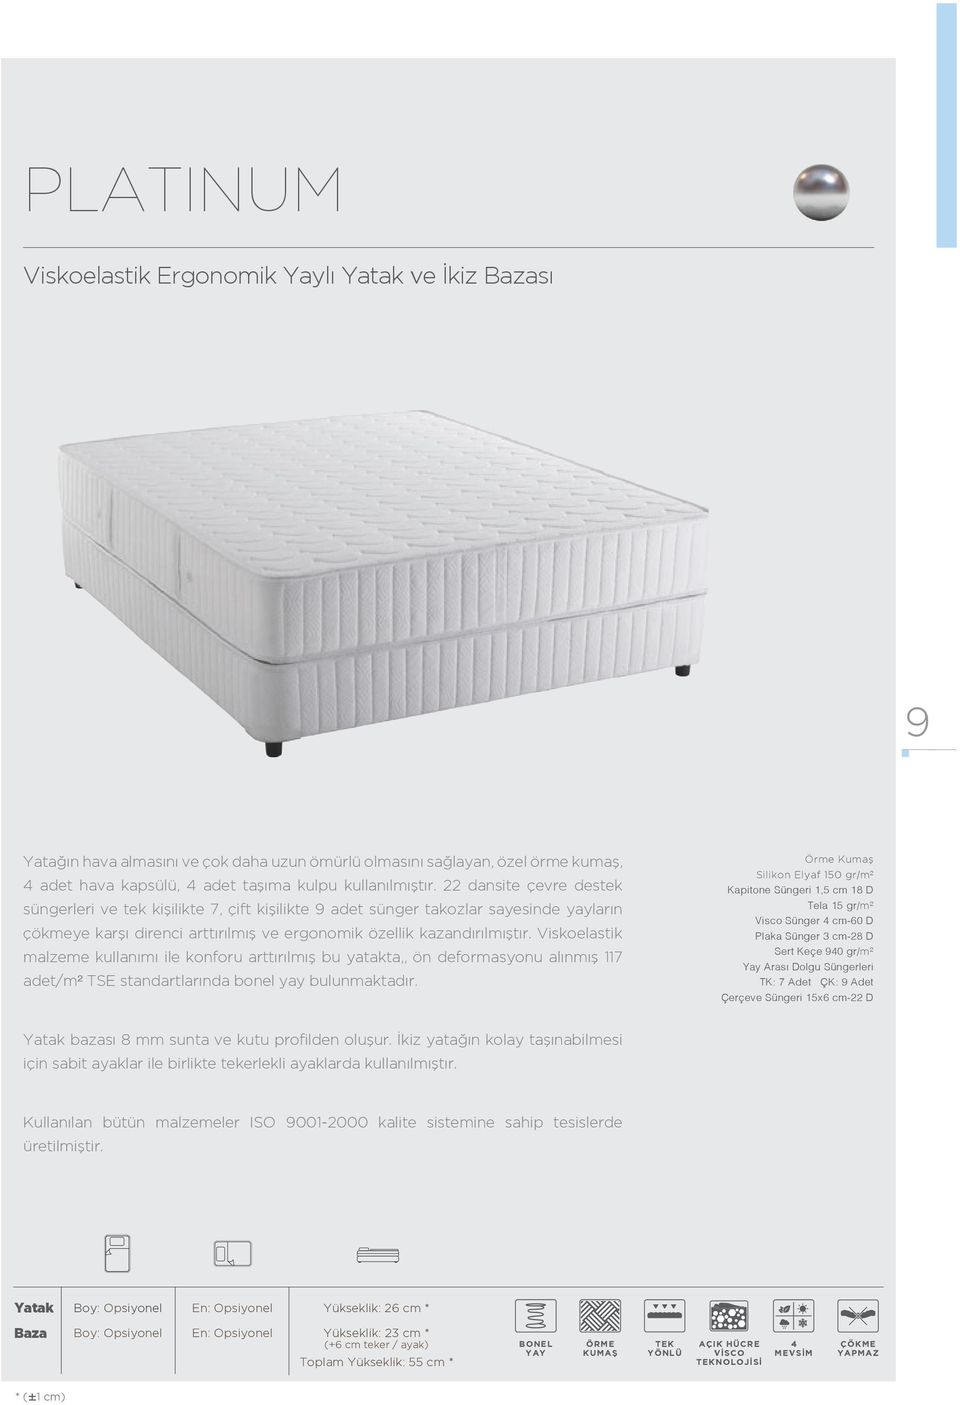 Viskoelastik malzeme kullanımı ile konforu arttırılmış bu yatakta,, ön deformasyonu alınmış 117 adet/m² TSE standartlarında bonel yay bulunmaktadır.